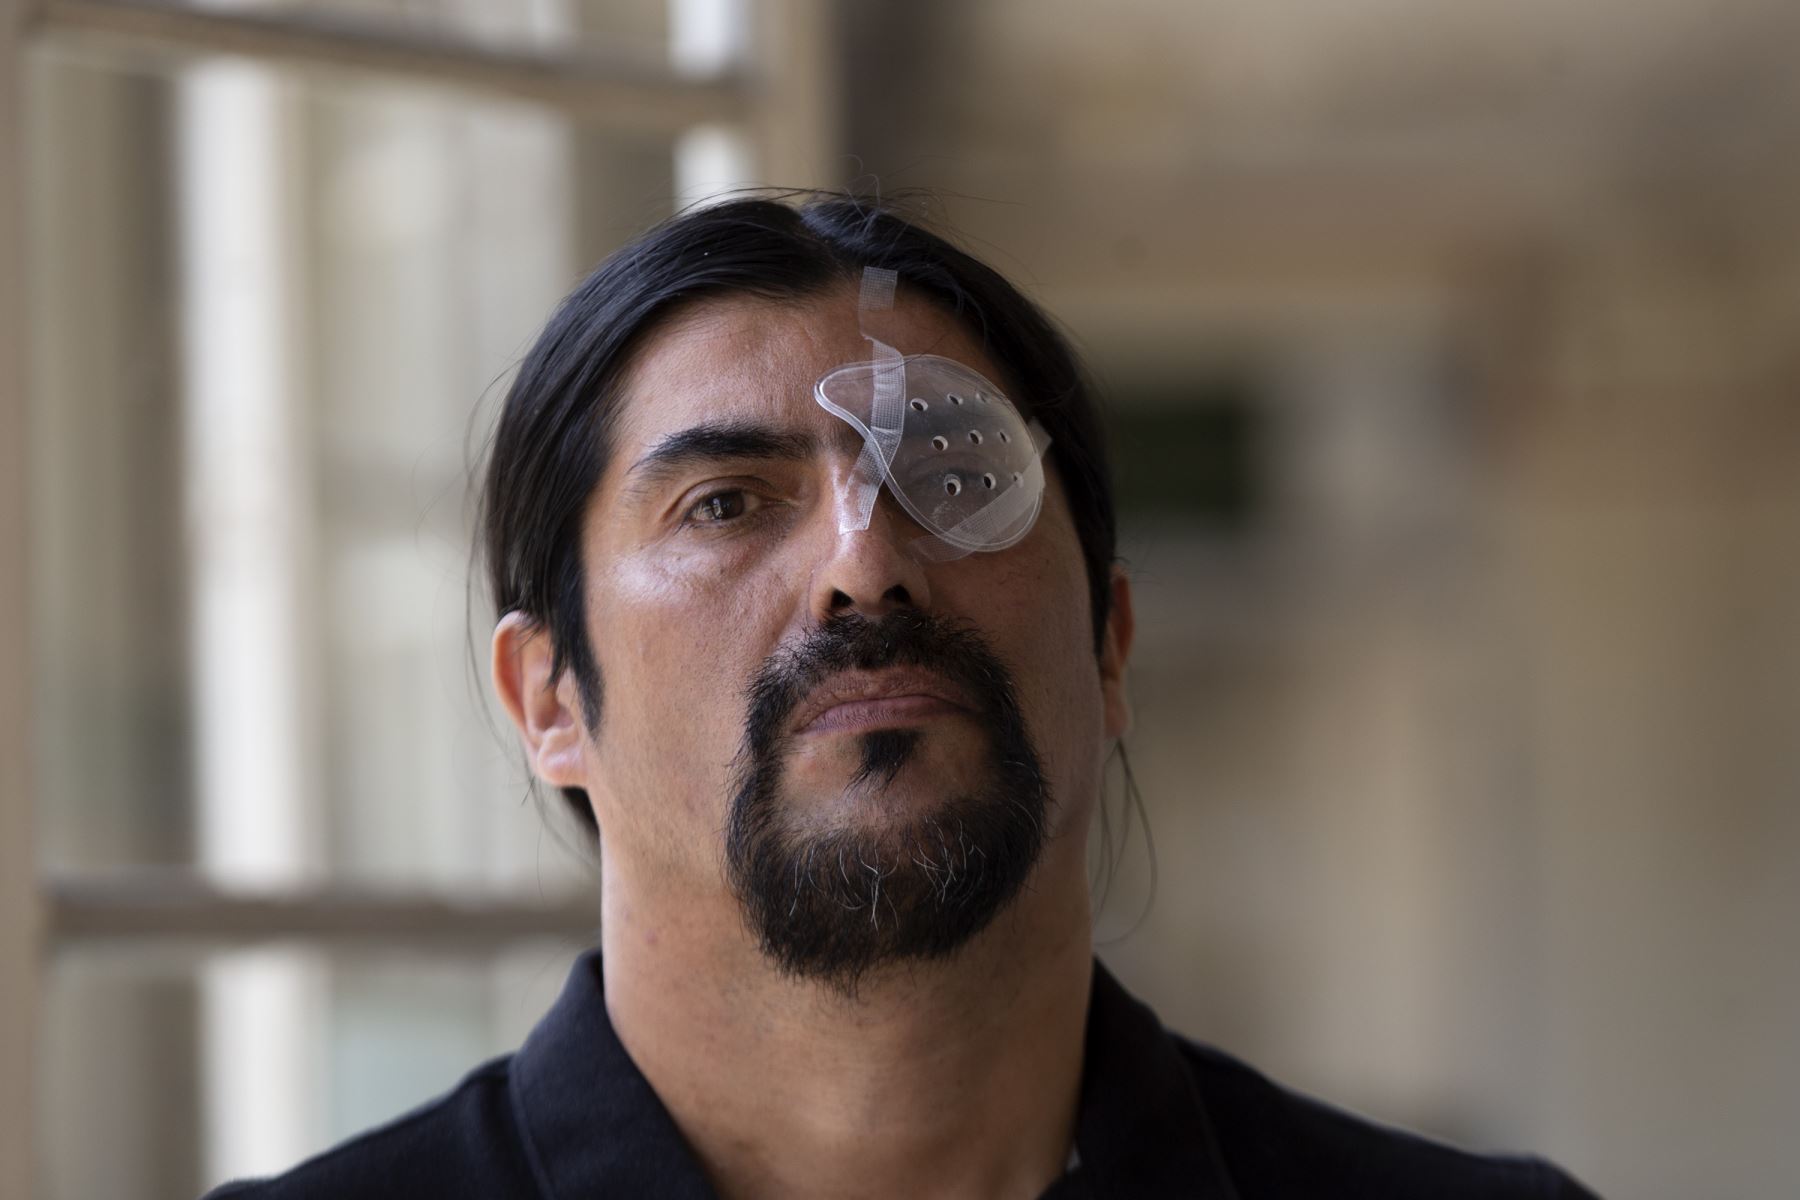 El trabajador de construcción chileno Nelson Iturriaga, de 43 años, resultó herido en el ojo debido a la violencia policial mientras protestaba, posa en un hospital de Santiago.
Foto: AFP